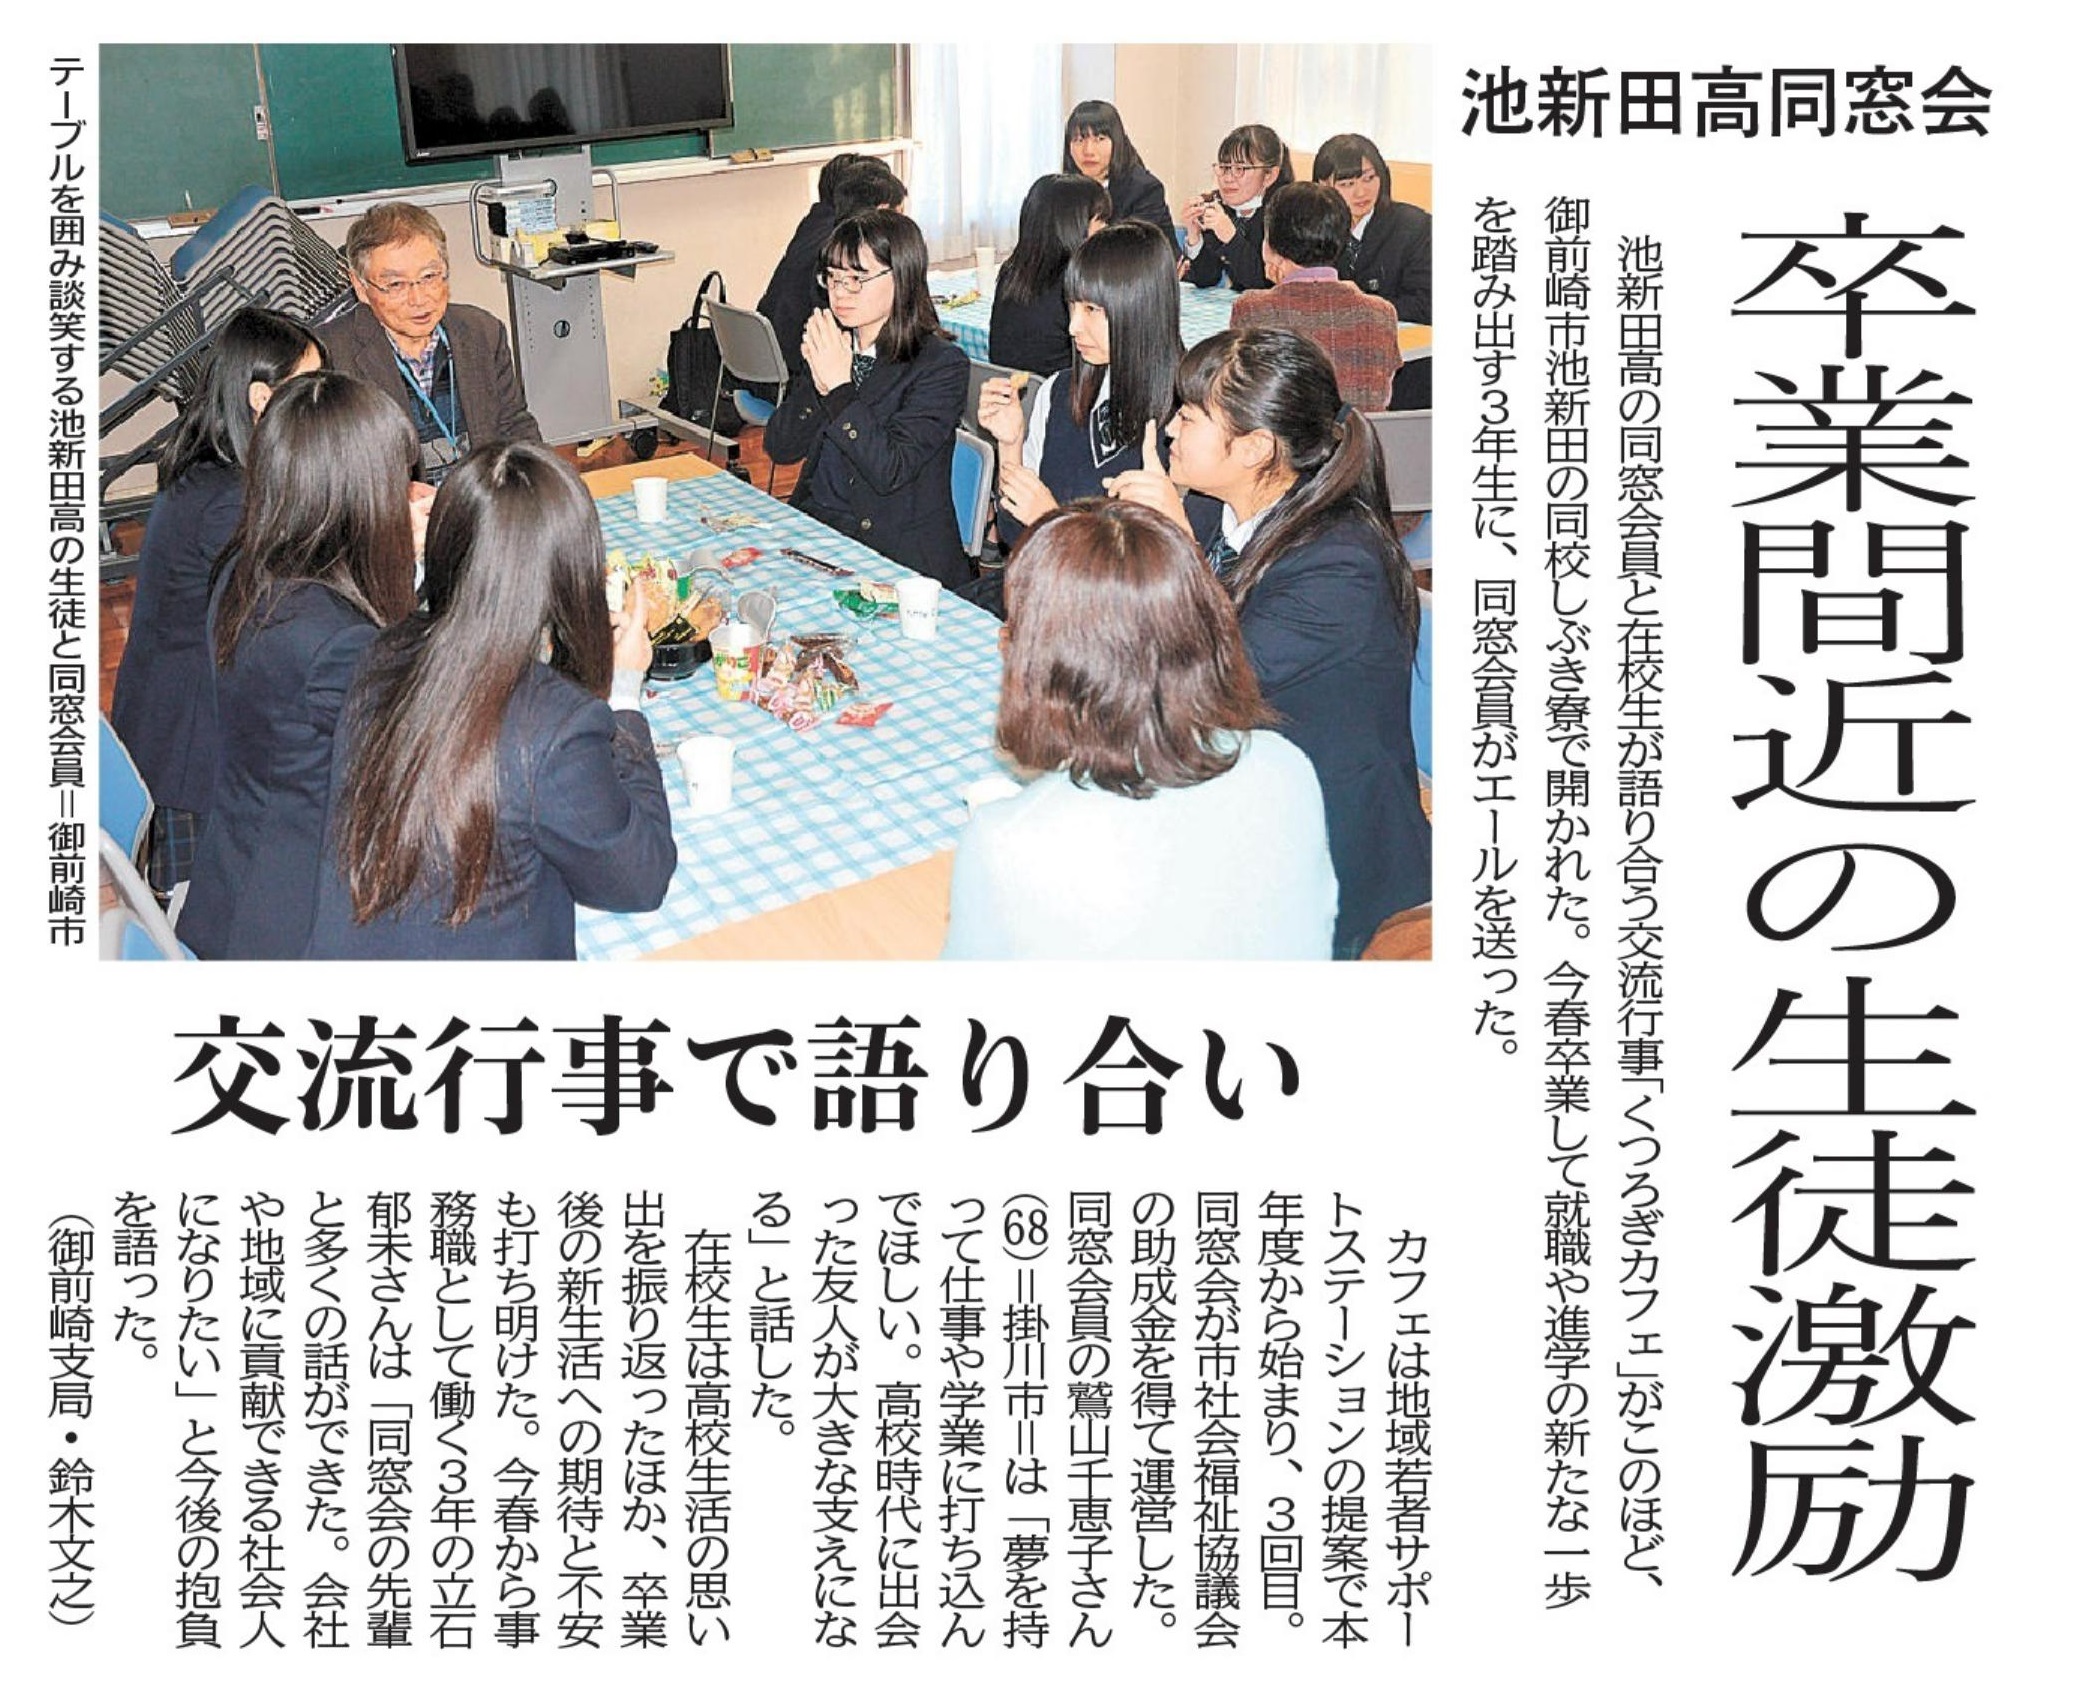 静岡新聞に掲載されました。